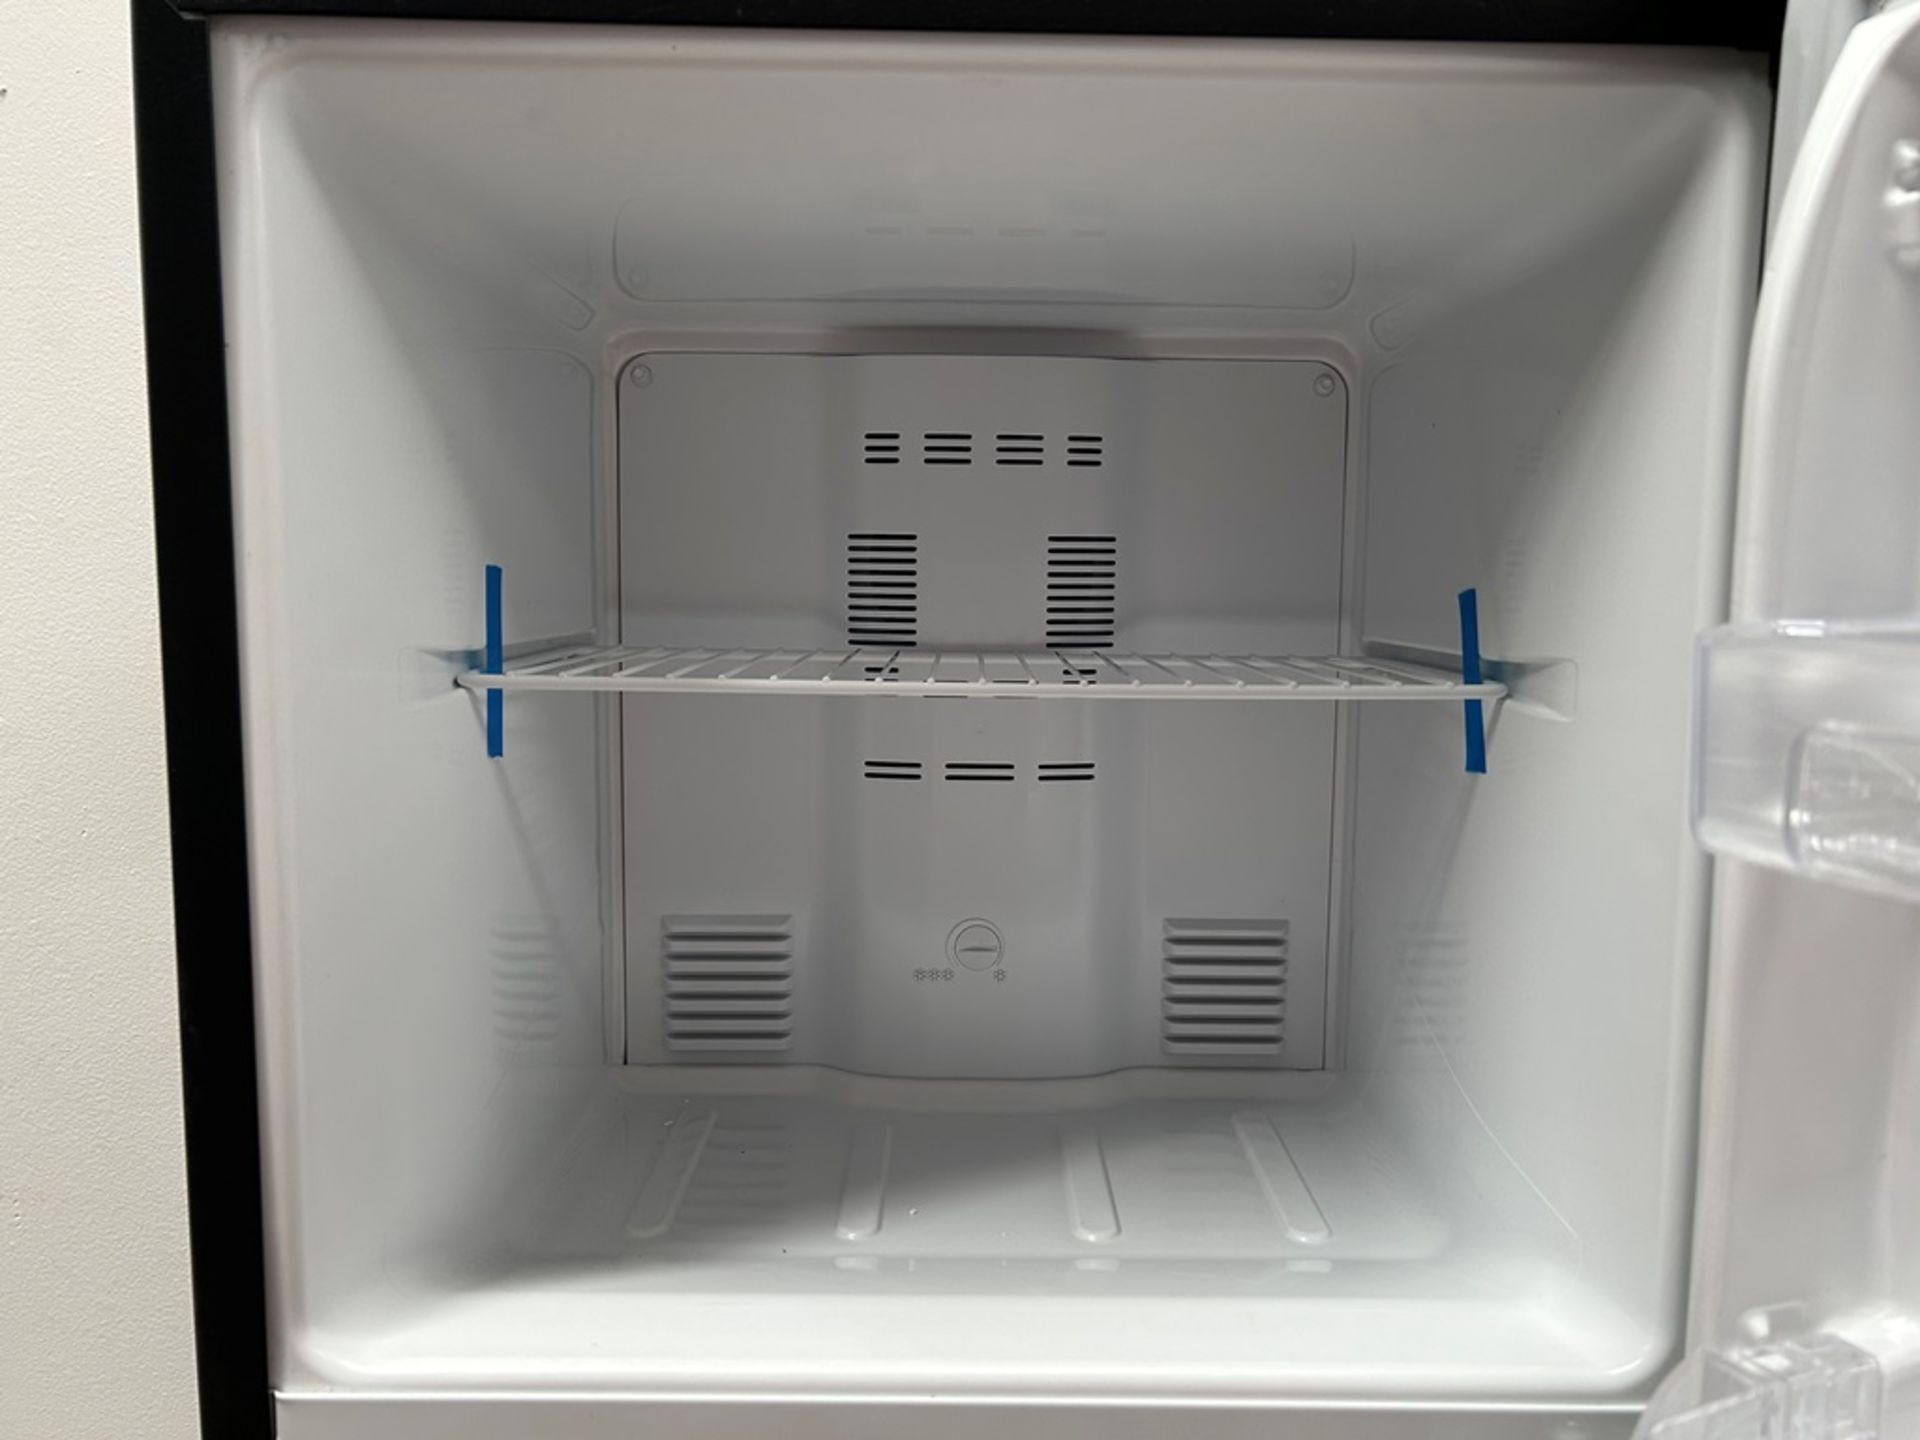 Lote de 2 refrigeradores contiene: 1 refrigerador Marca MABE, Modelo RMA250PVMRP0, Serie 13859, Col - Image 5 of 18